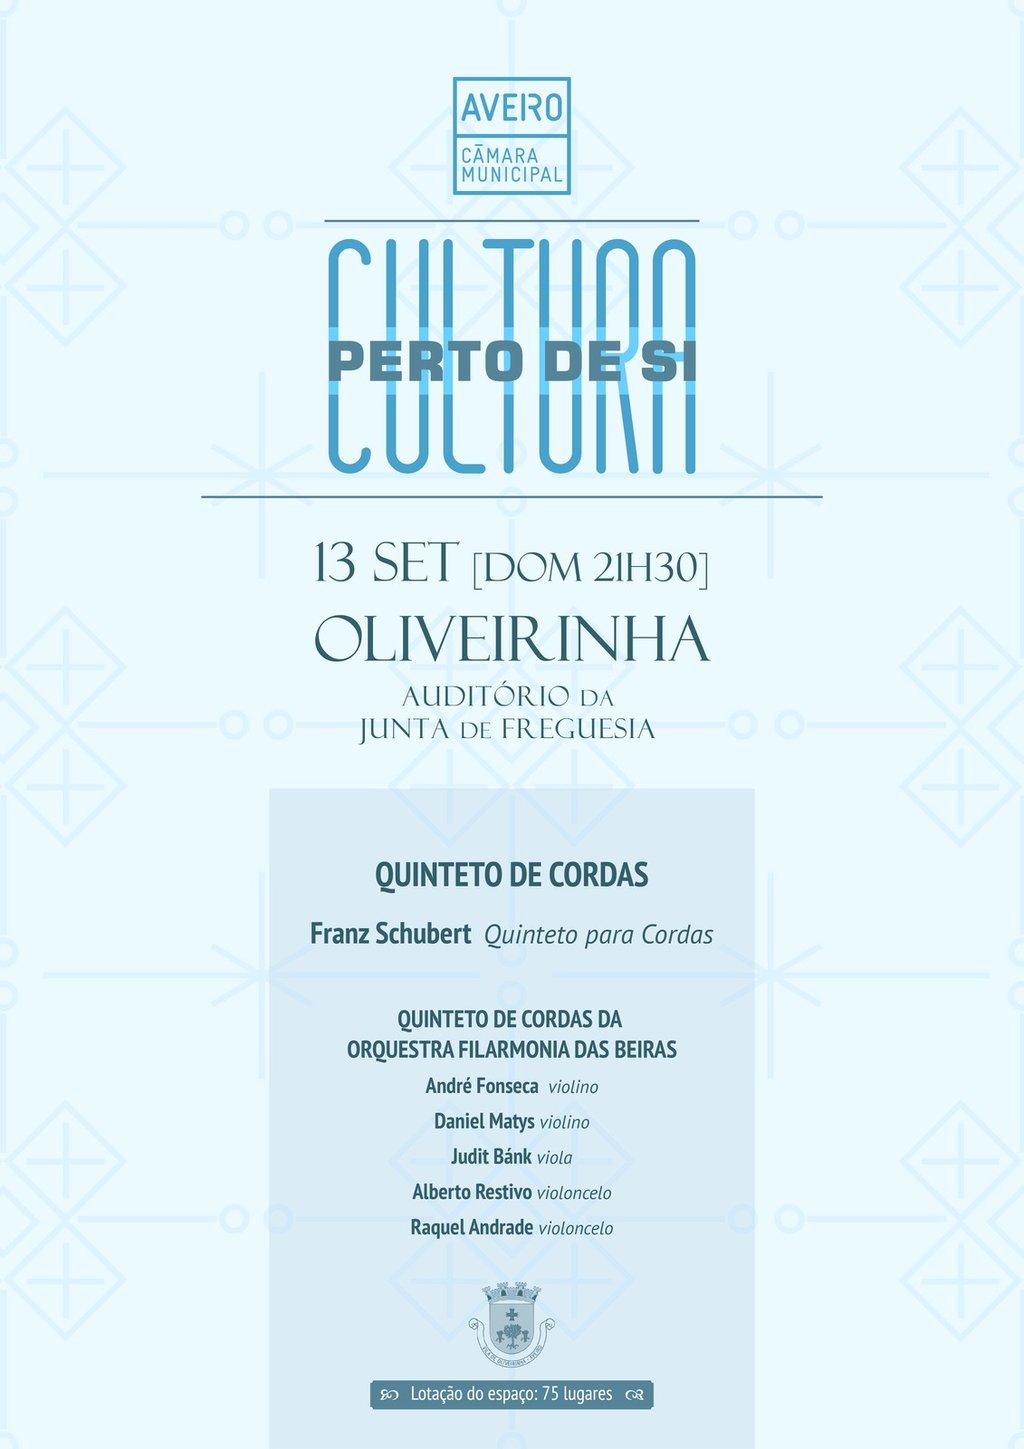 CULTURA_PERTO_DE_SI_OLIVEIRINHA_A3_III-01